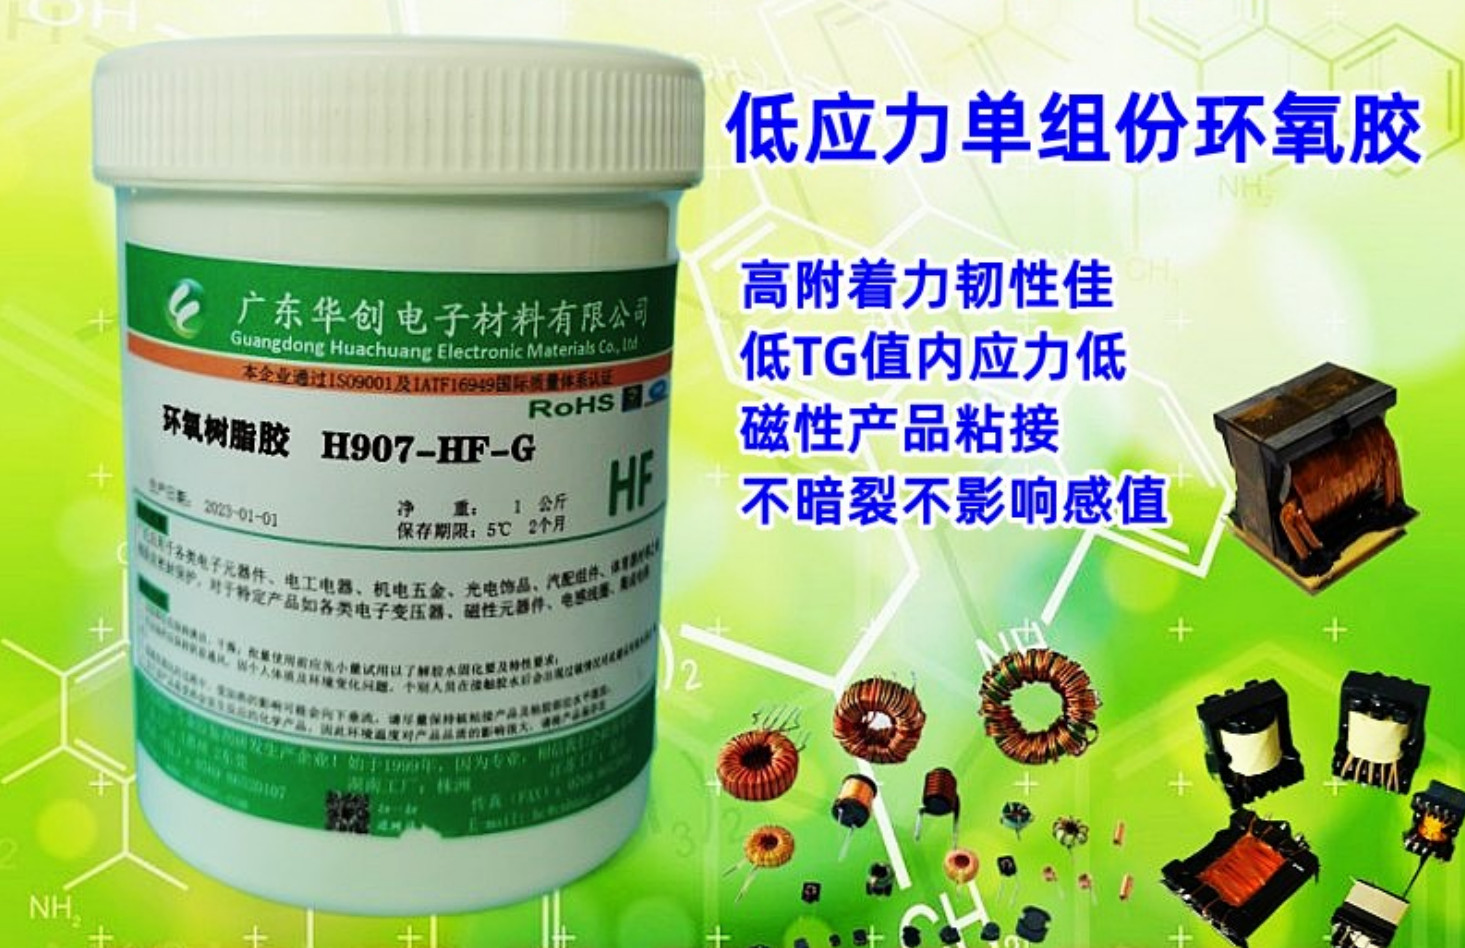 H907-HF-G 磁芯胶 低应力胶水 单组份环氧树脂胶 电子元件粘接胶